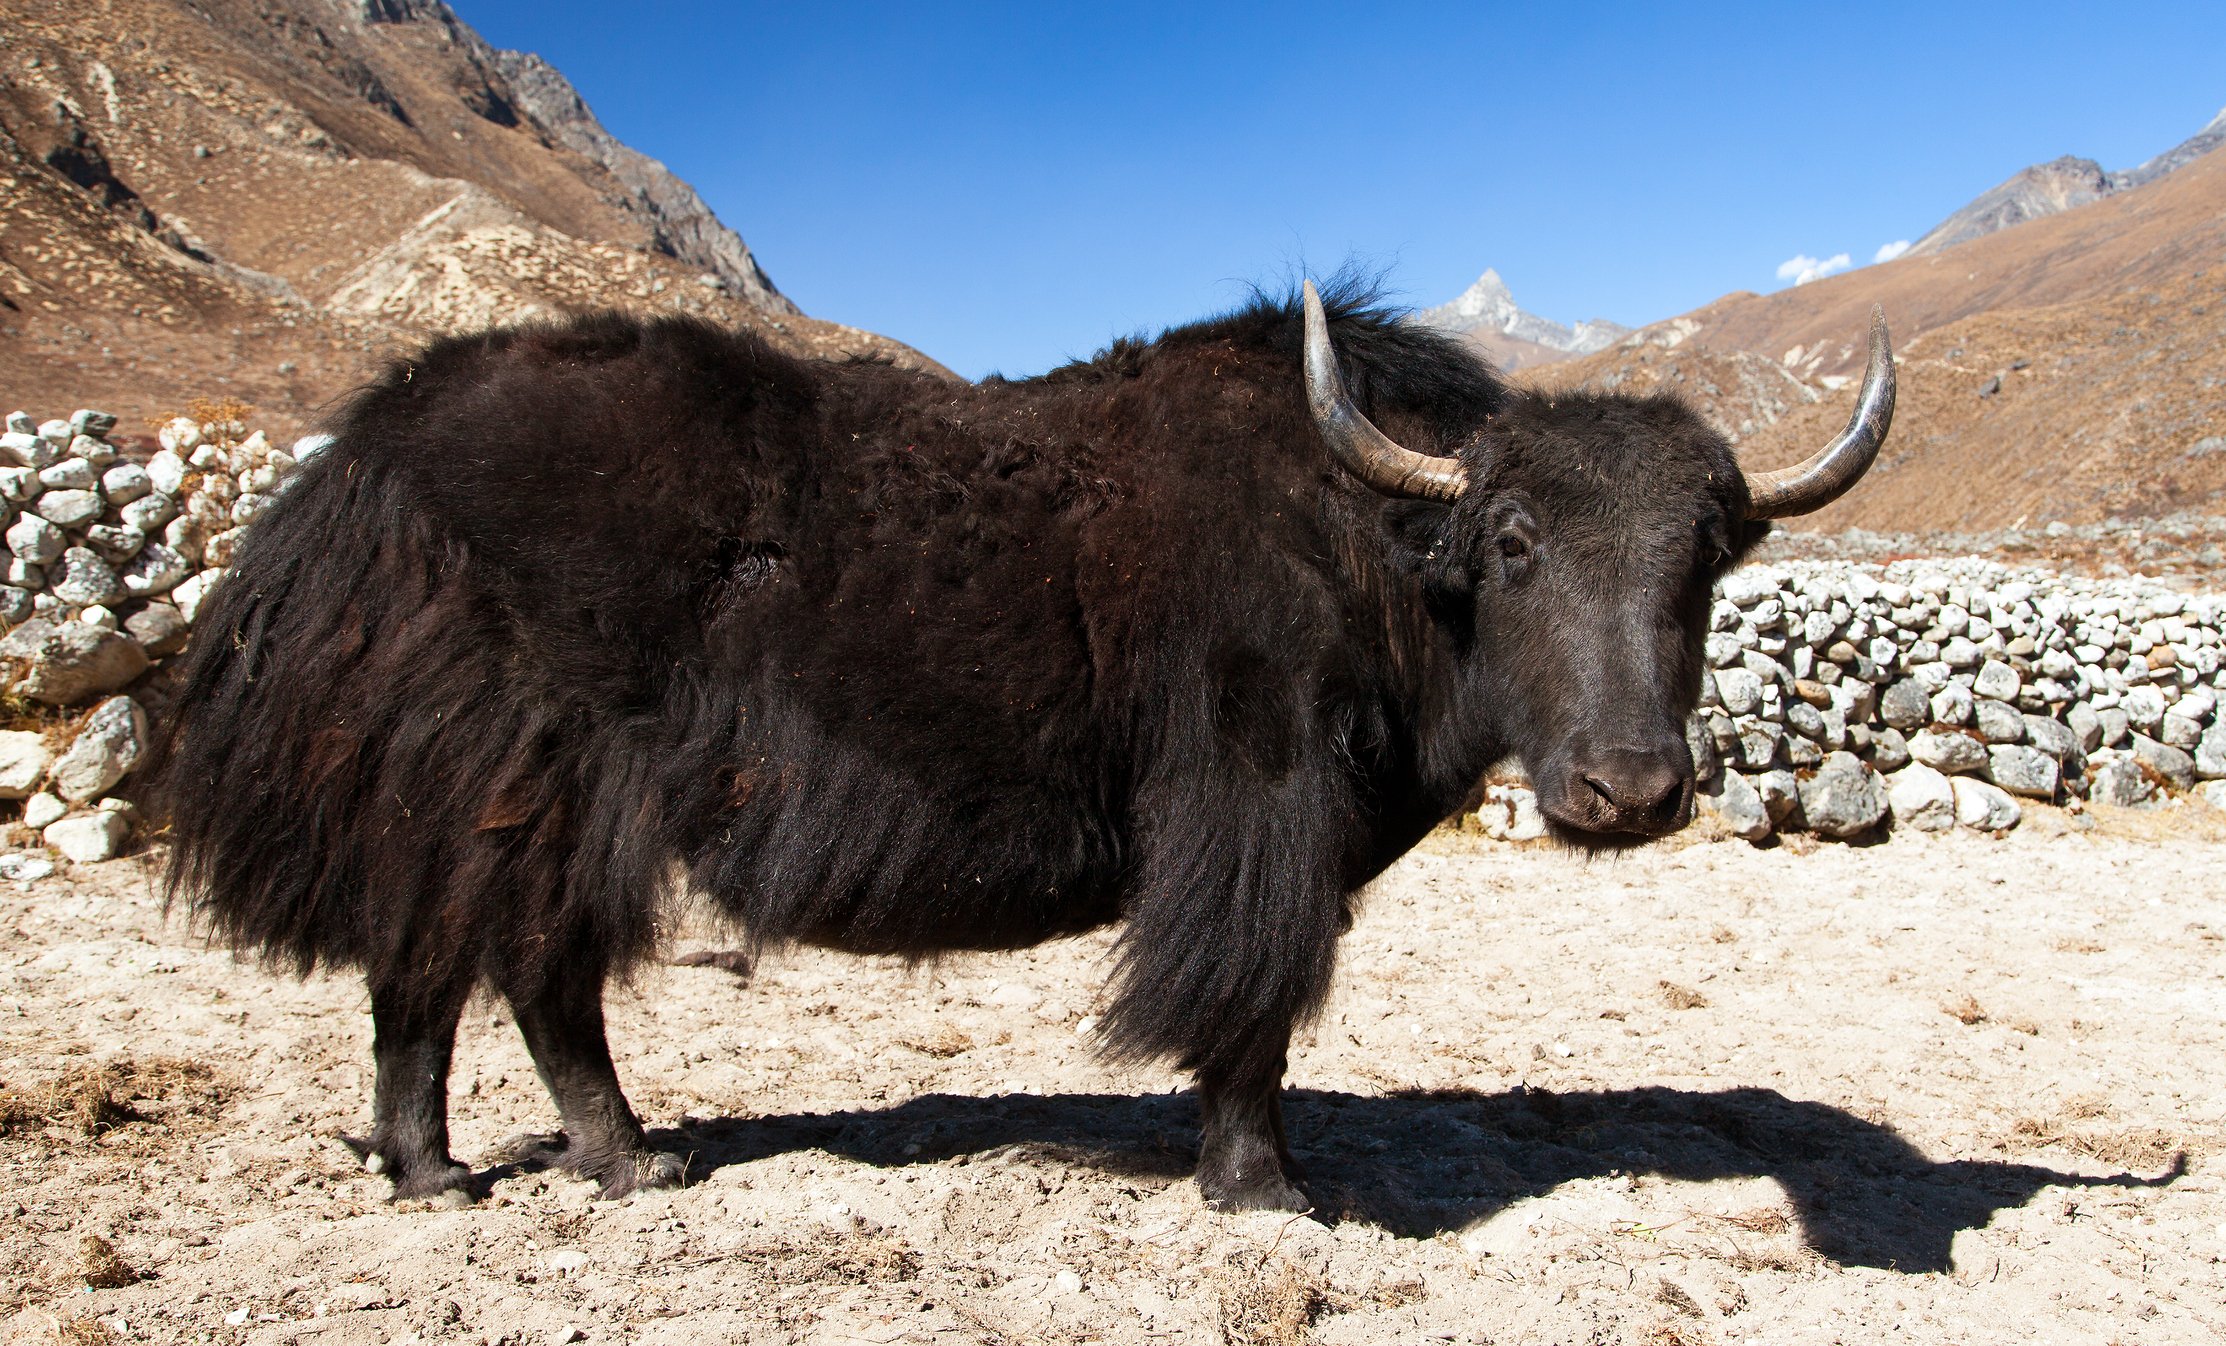 National Geographic España on Twitter: "Animal de carga, fuente de alimento y combustible… Los yaks son unos seres extraordiarios. Te contamos un montón de curiosidades de estos iconos de la cultura tibetana